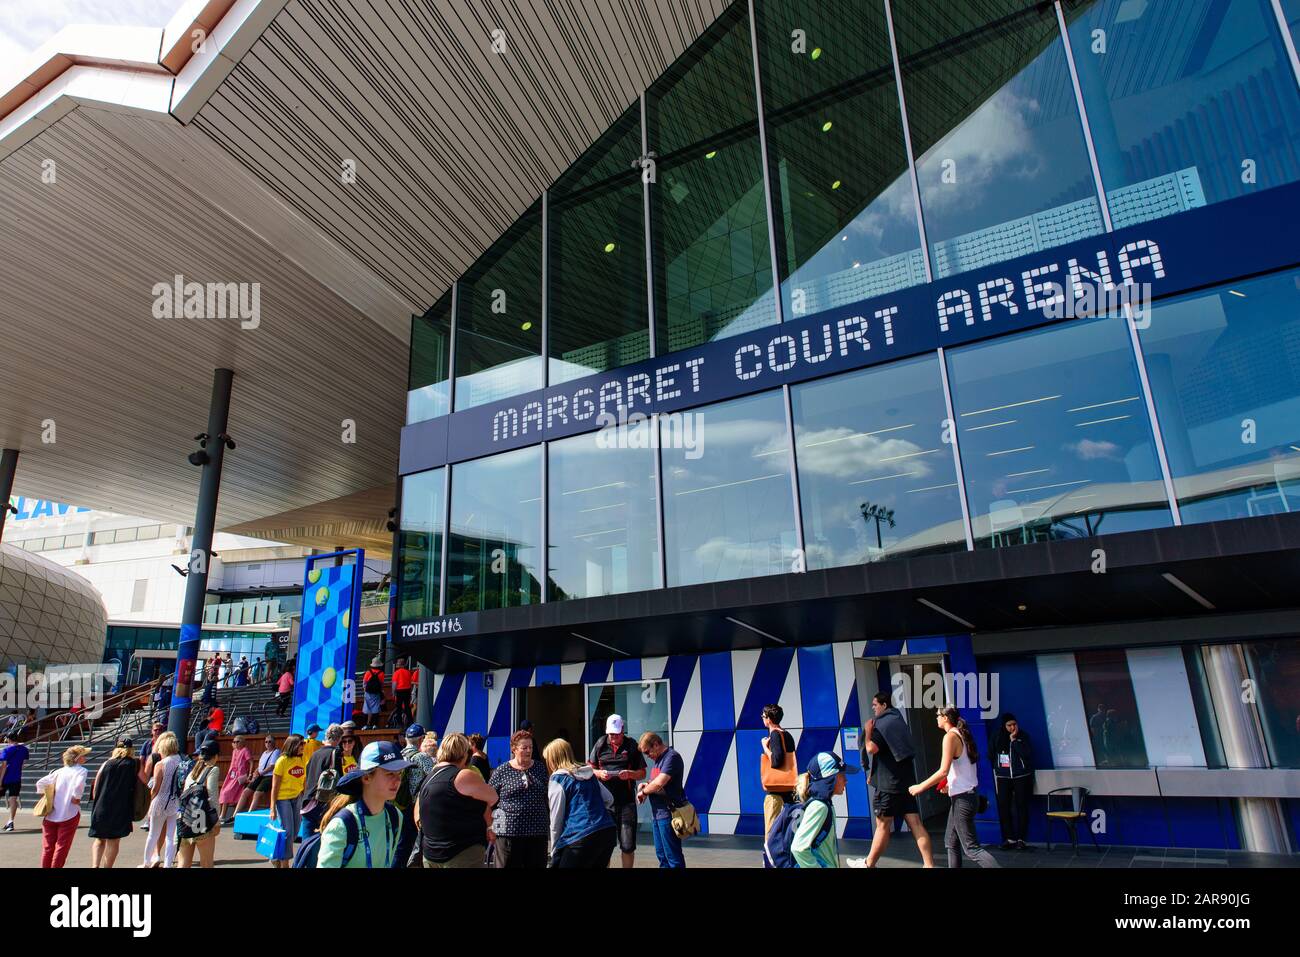 Margaret Court Arena per l'Australian Open 2020, un campo da tennis al Melbourne Park, Melbourne, Australia Foto Stock